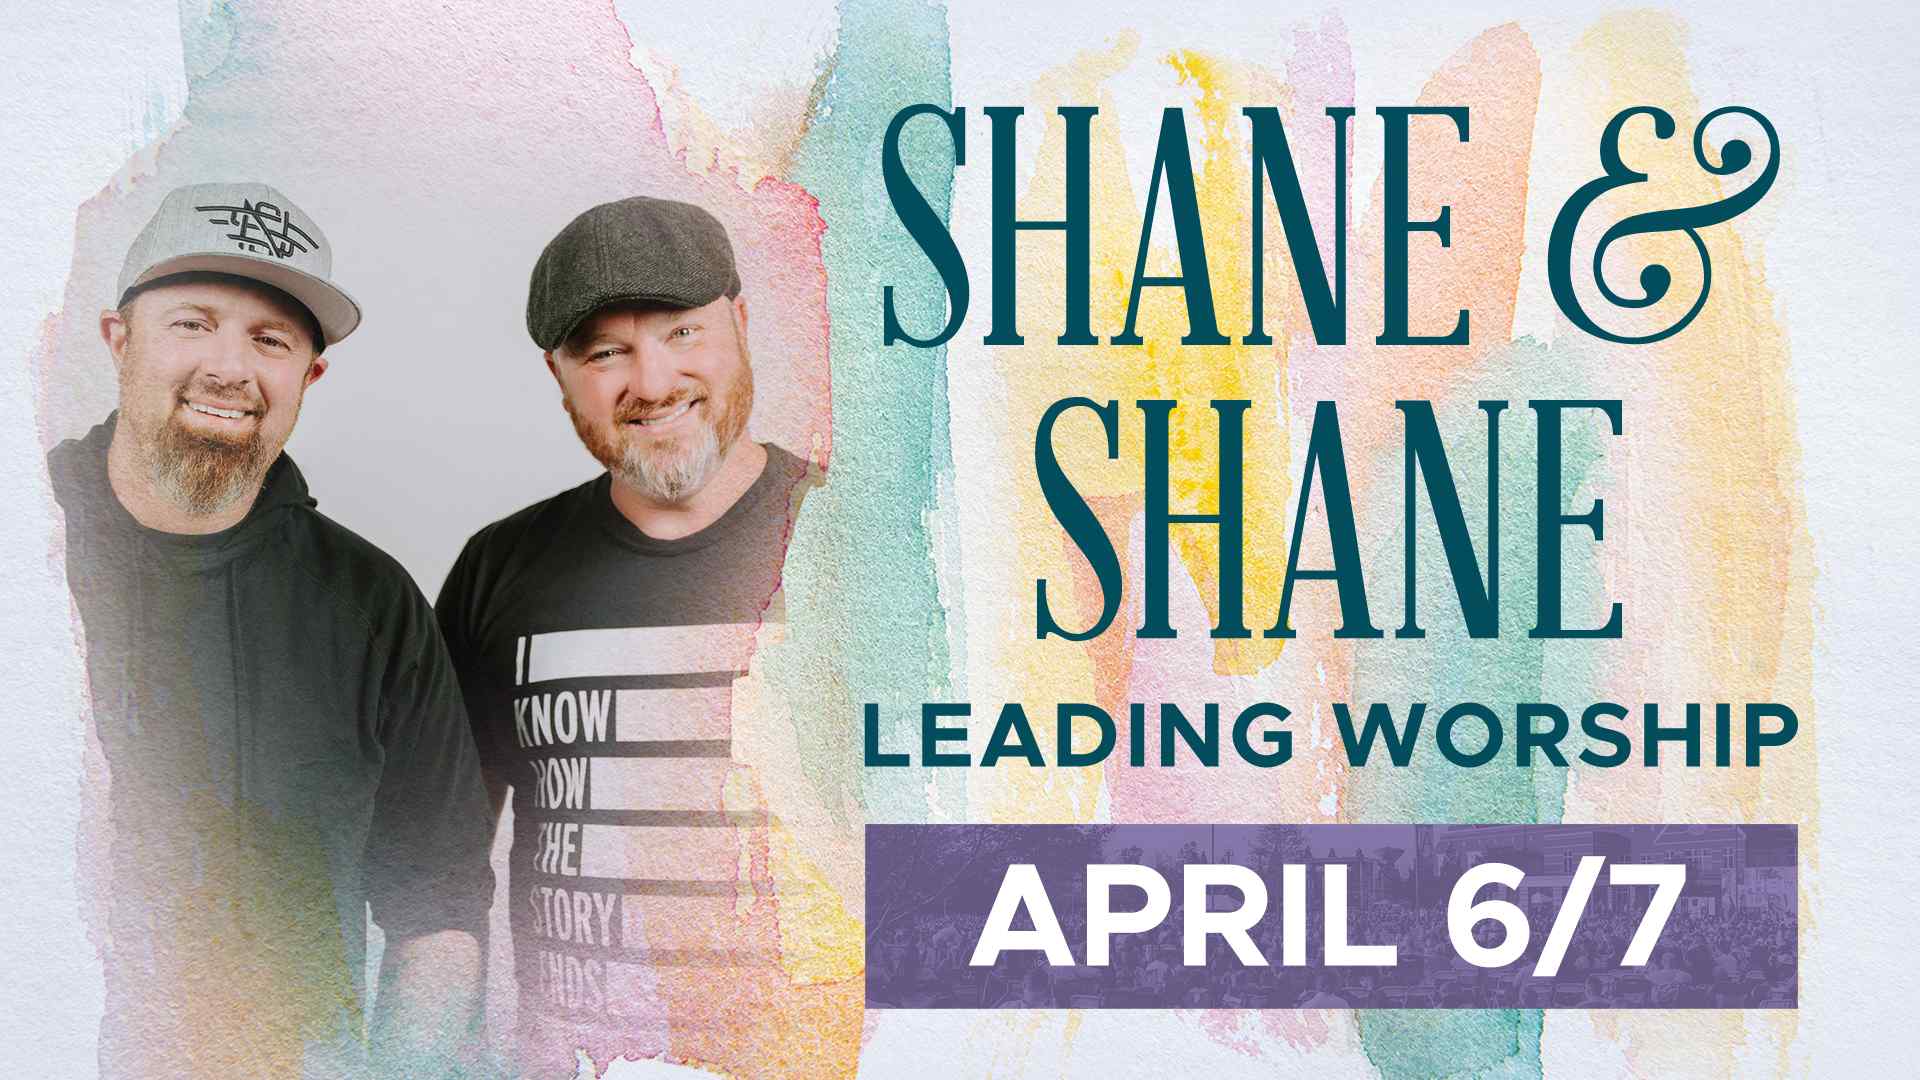 Shane & Shane: April 6/7